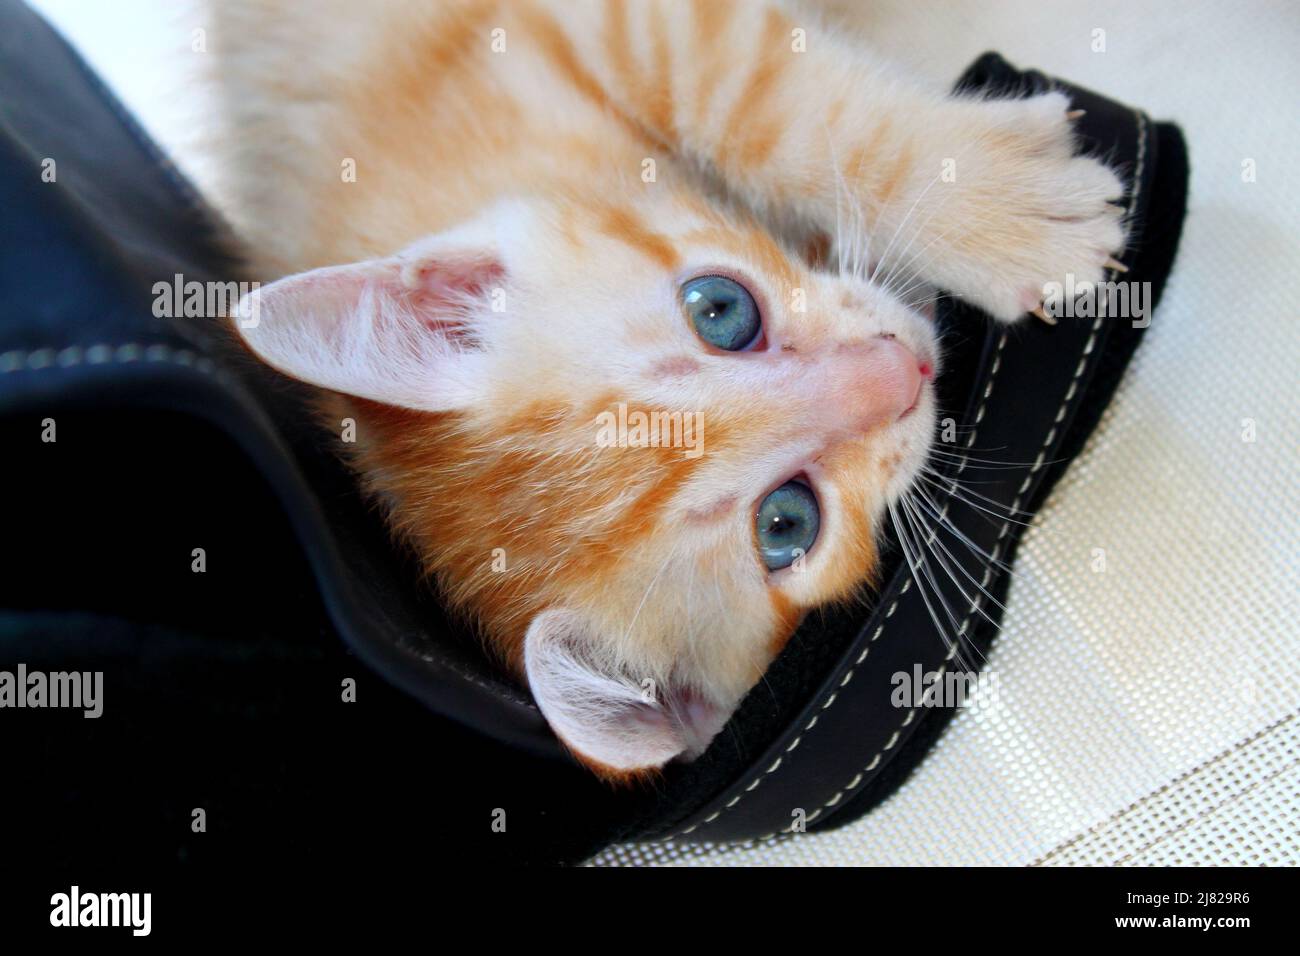 Chaton roux aux yeux bleus qui joue avec une anse de sac à main Foto Stock